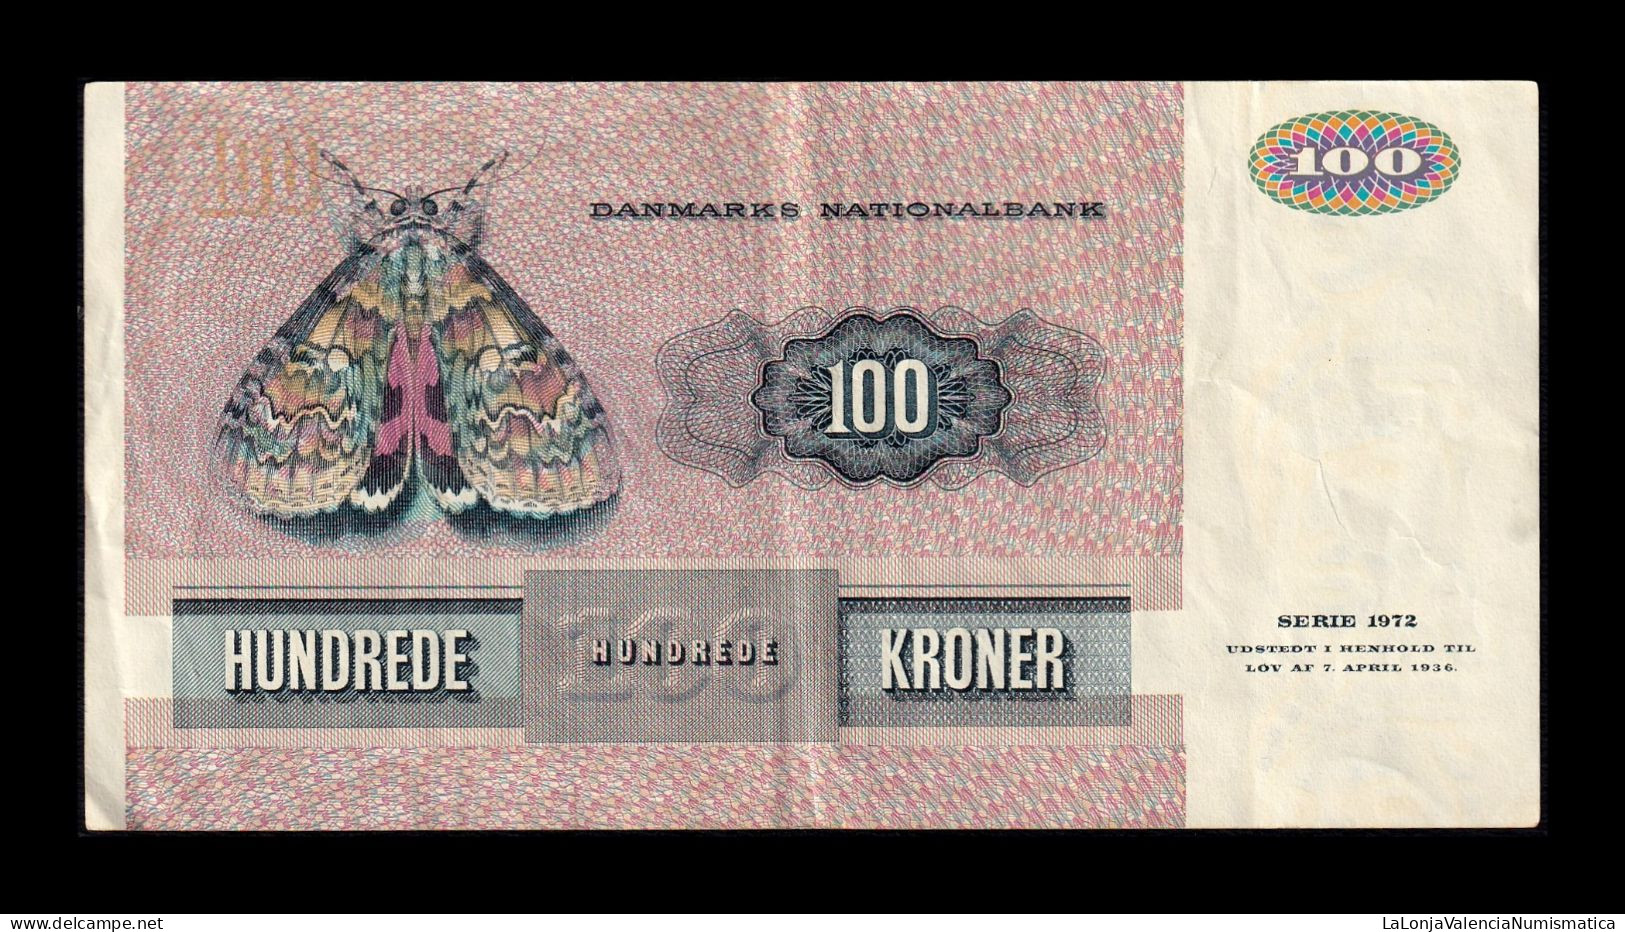 Dinamarca Denmark 100 Kroner 1990 Pick 51t Mbc Vf - Denmark